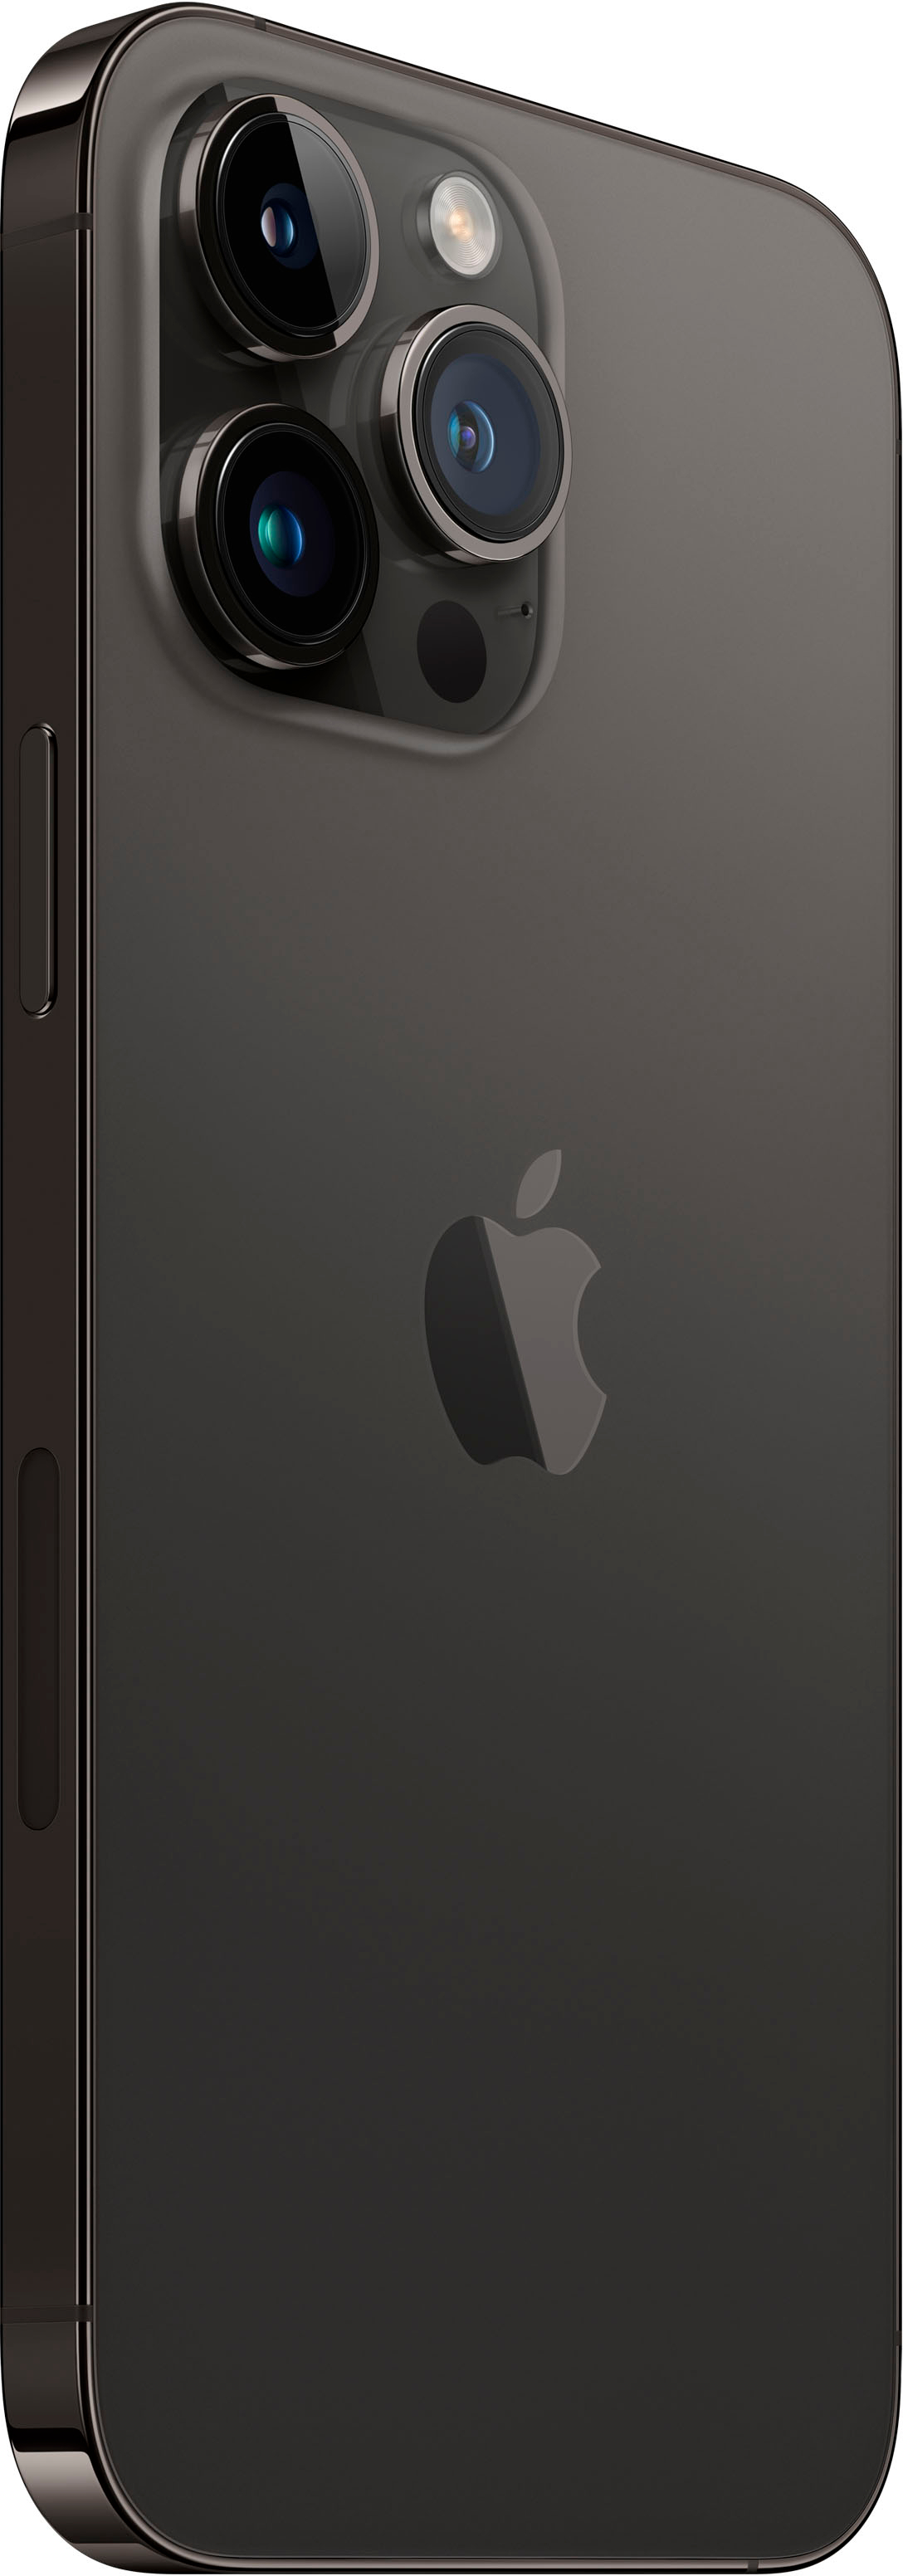 Apple iPhone 14 Pro Max 256GB Space Black (Verizon) MQ8T3LL/A 